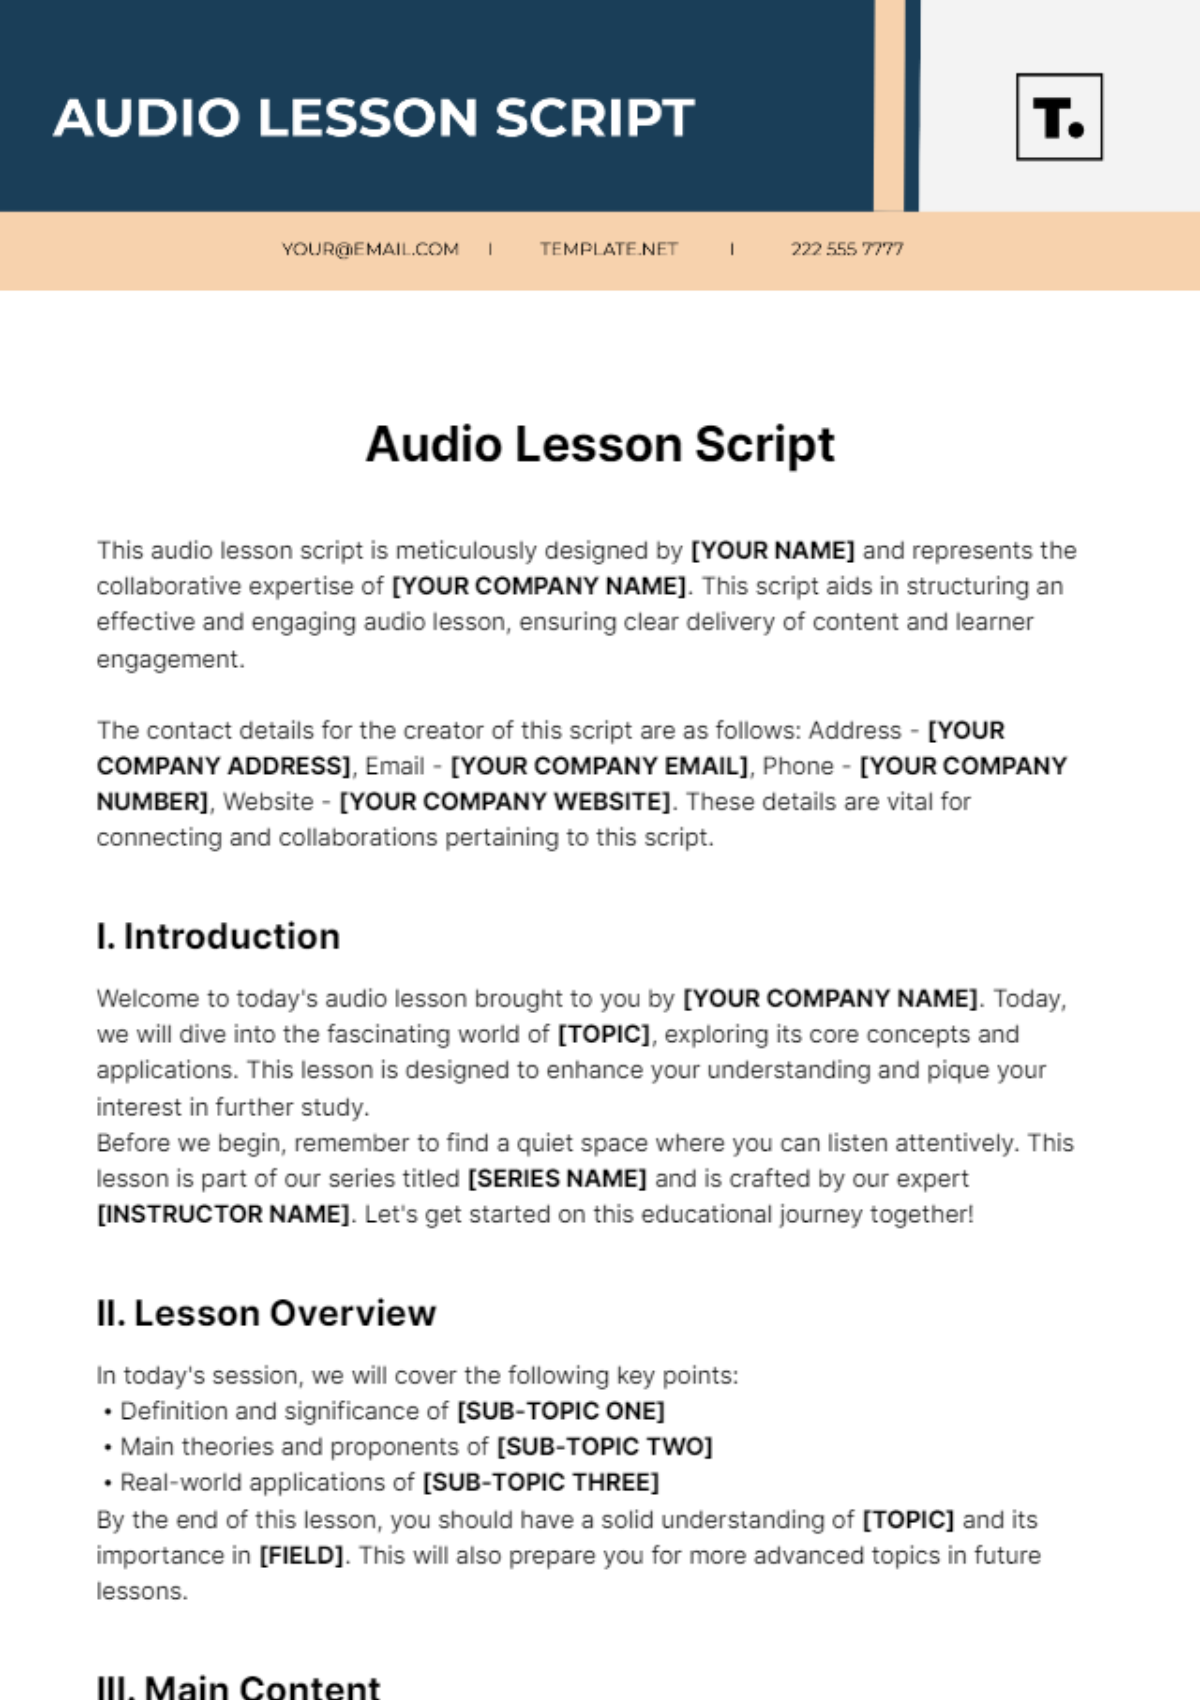 Free Audio Lesson Script Template